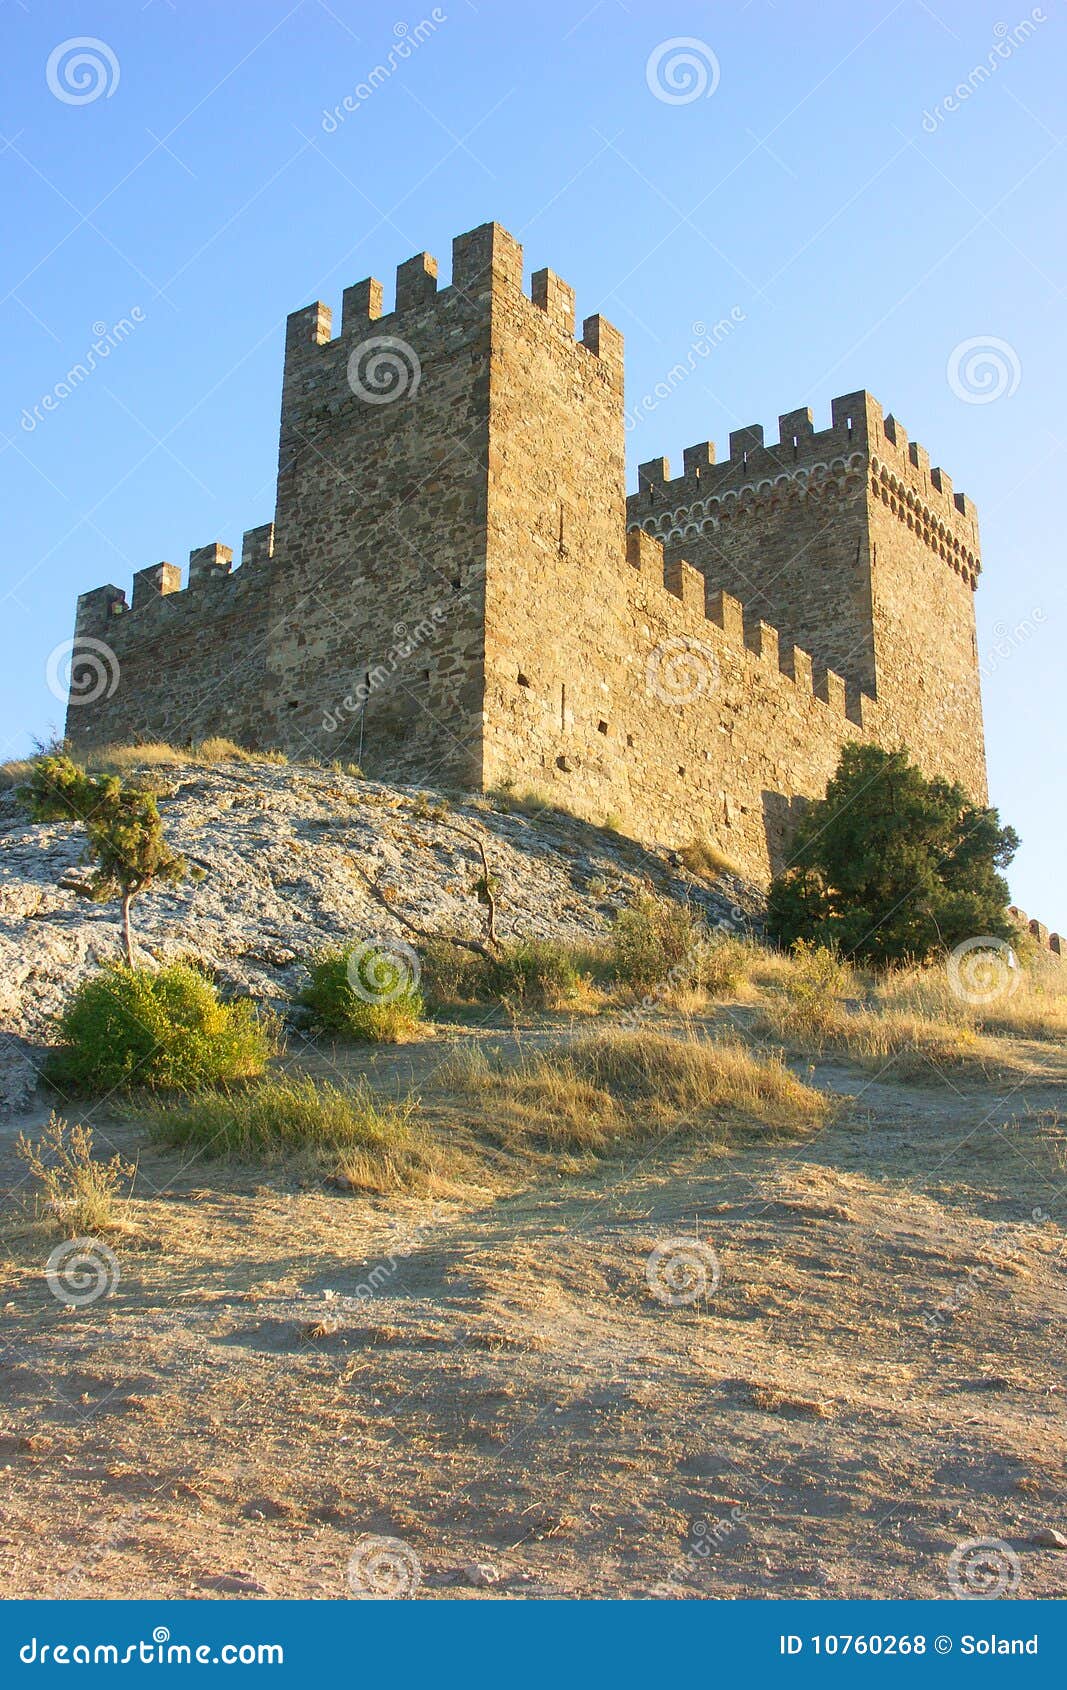 tower of genoa fortress in sudak crimea